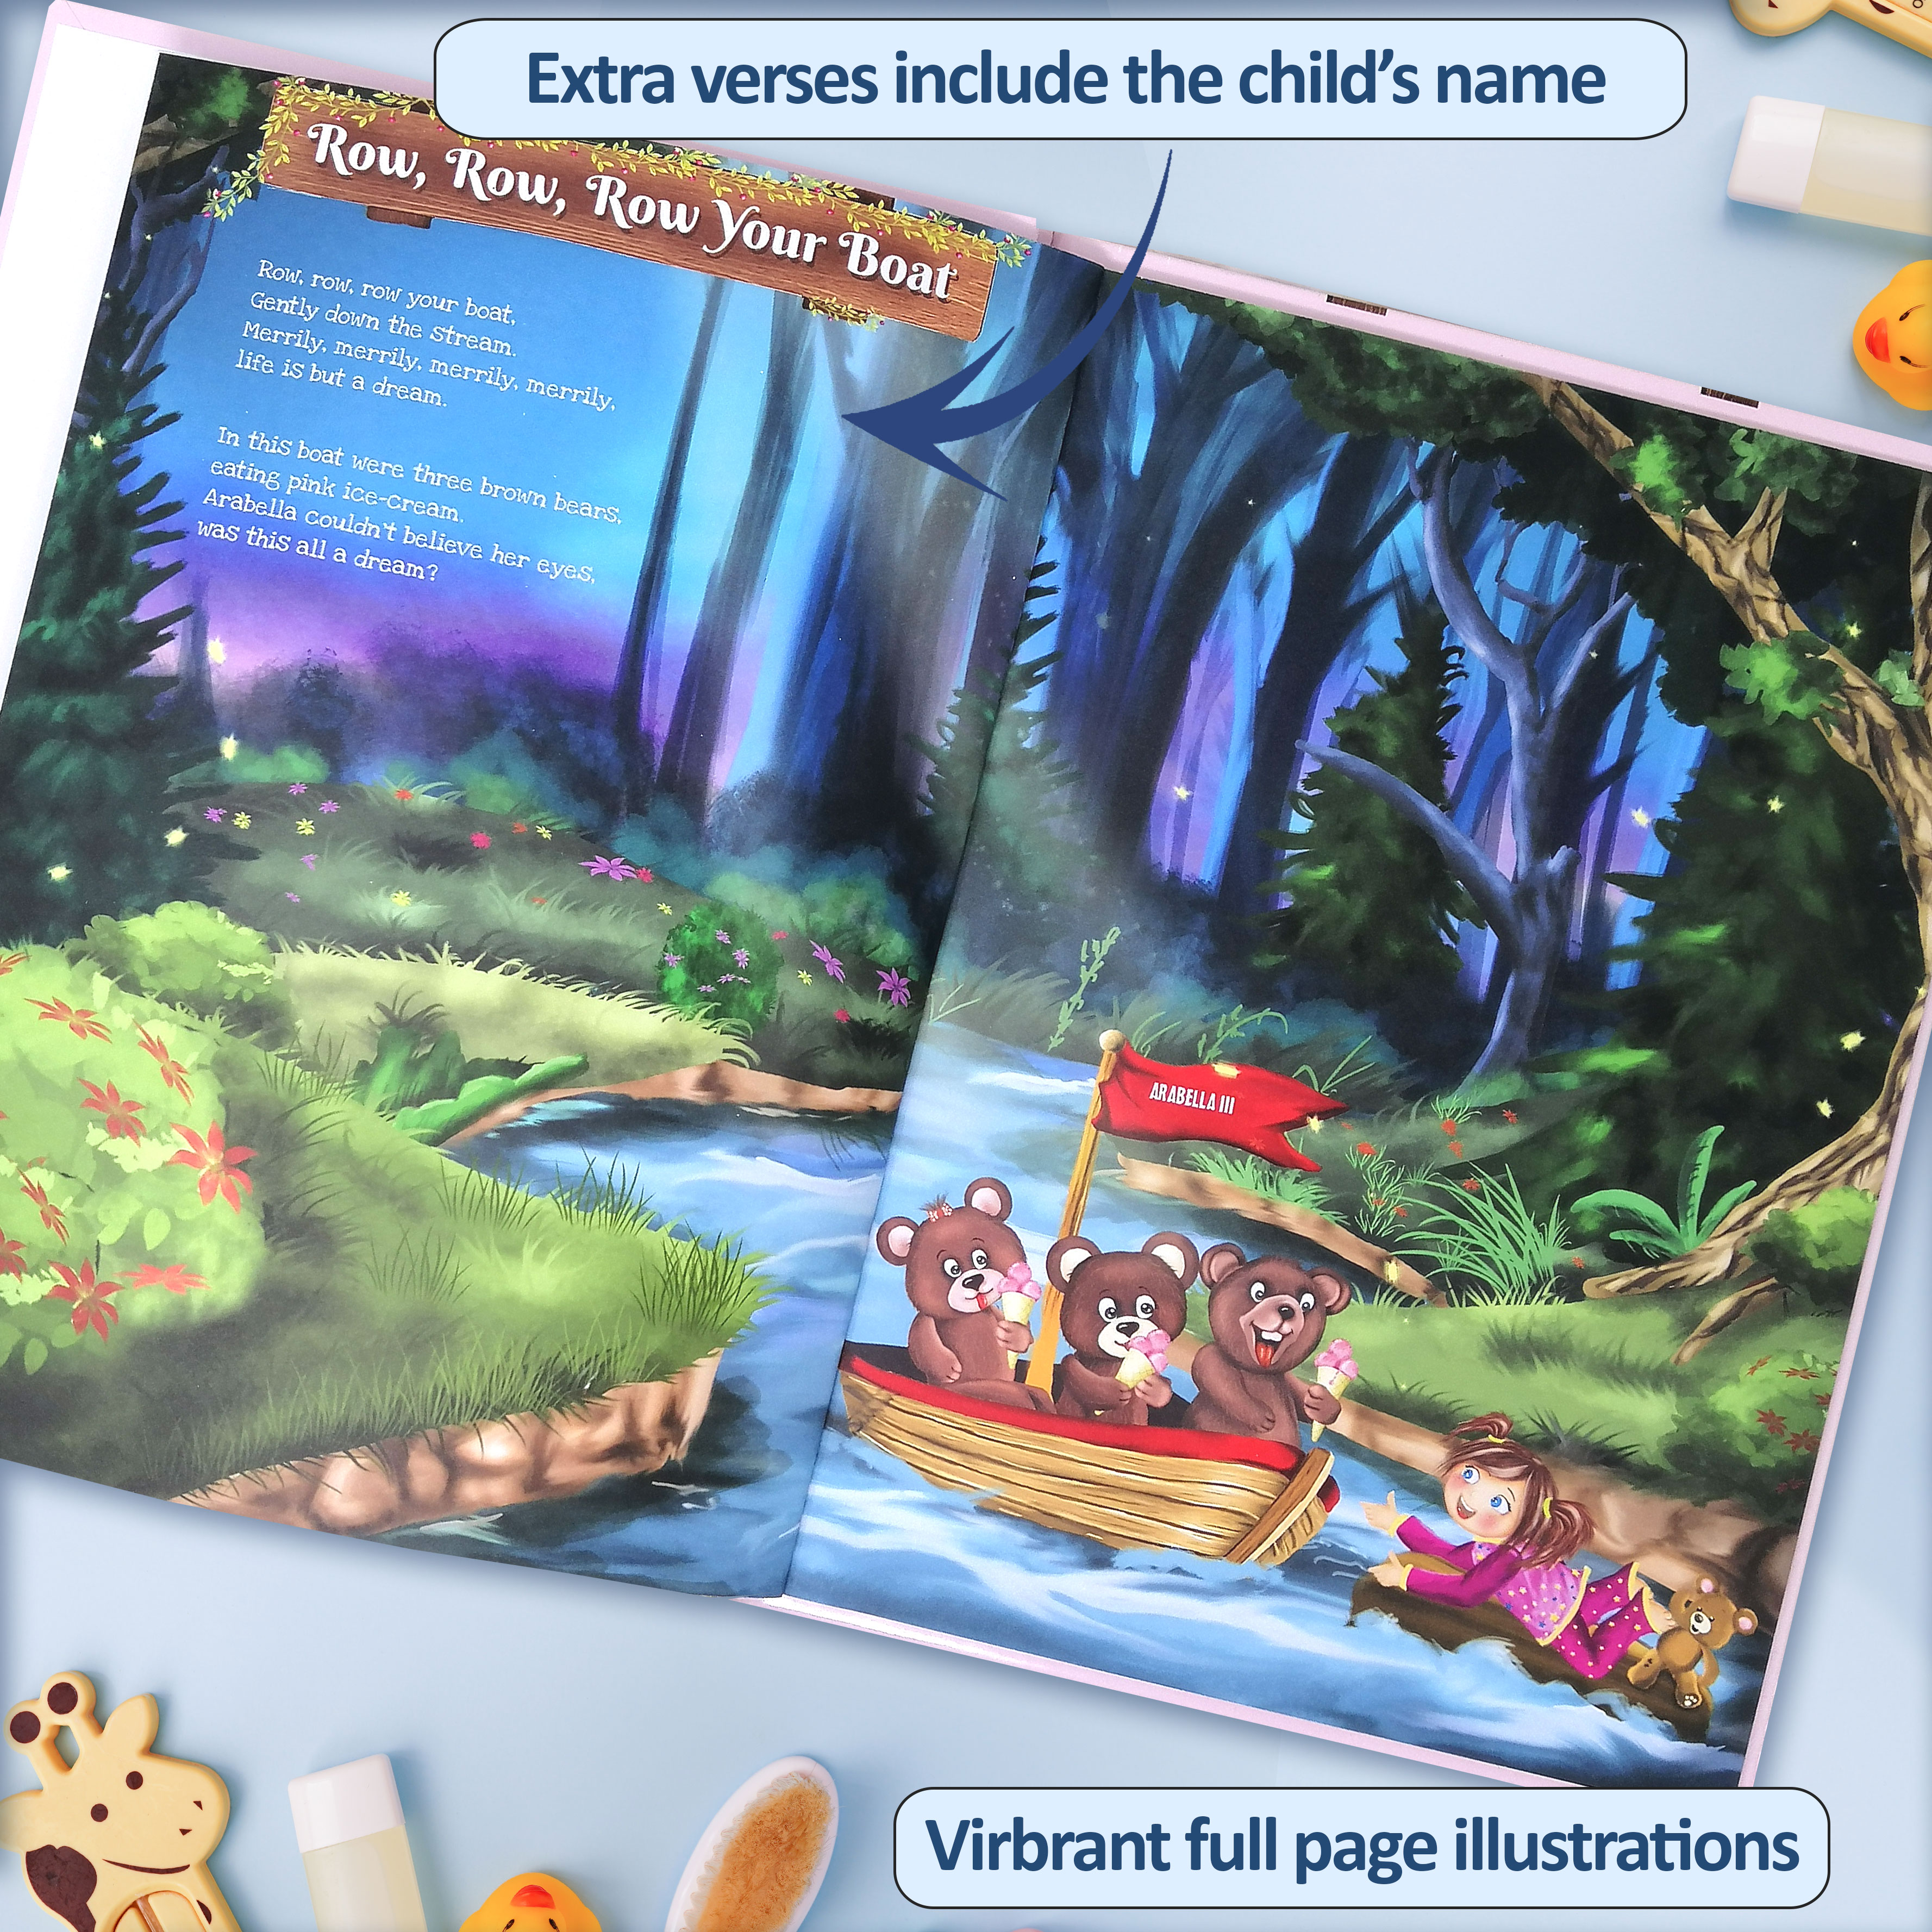 Personalised Children's Book - Nursery Rhymes